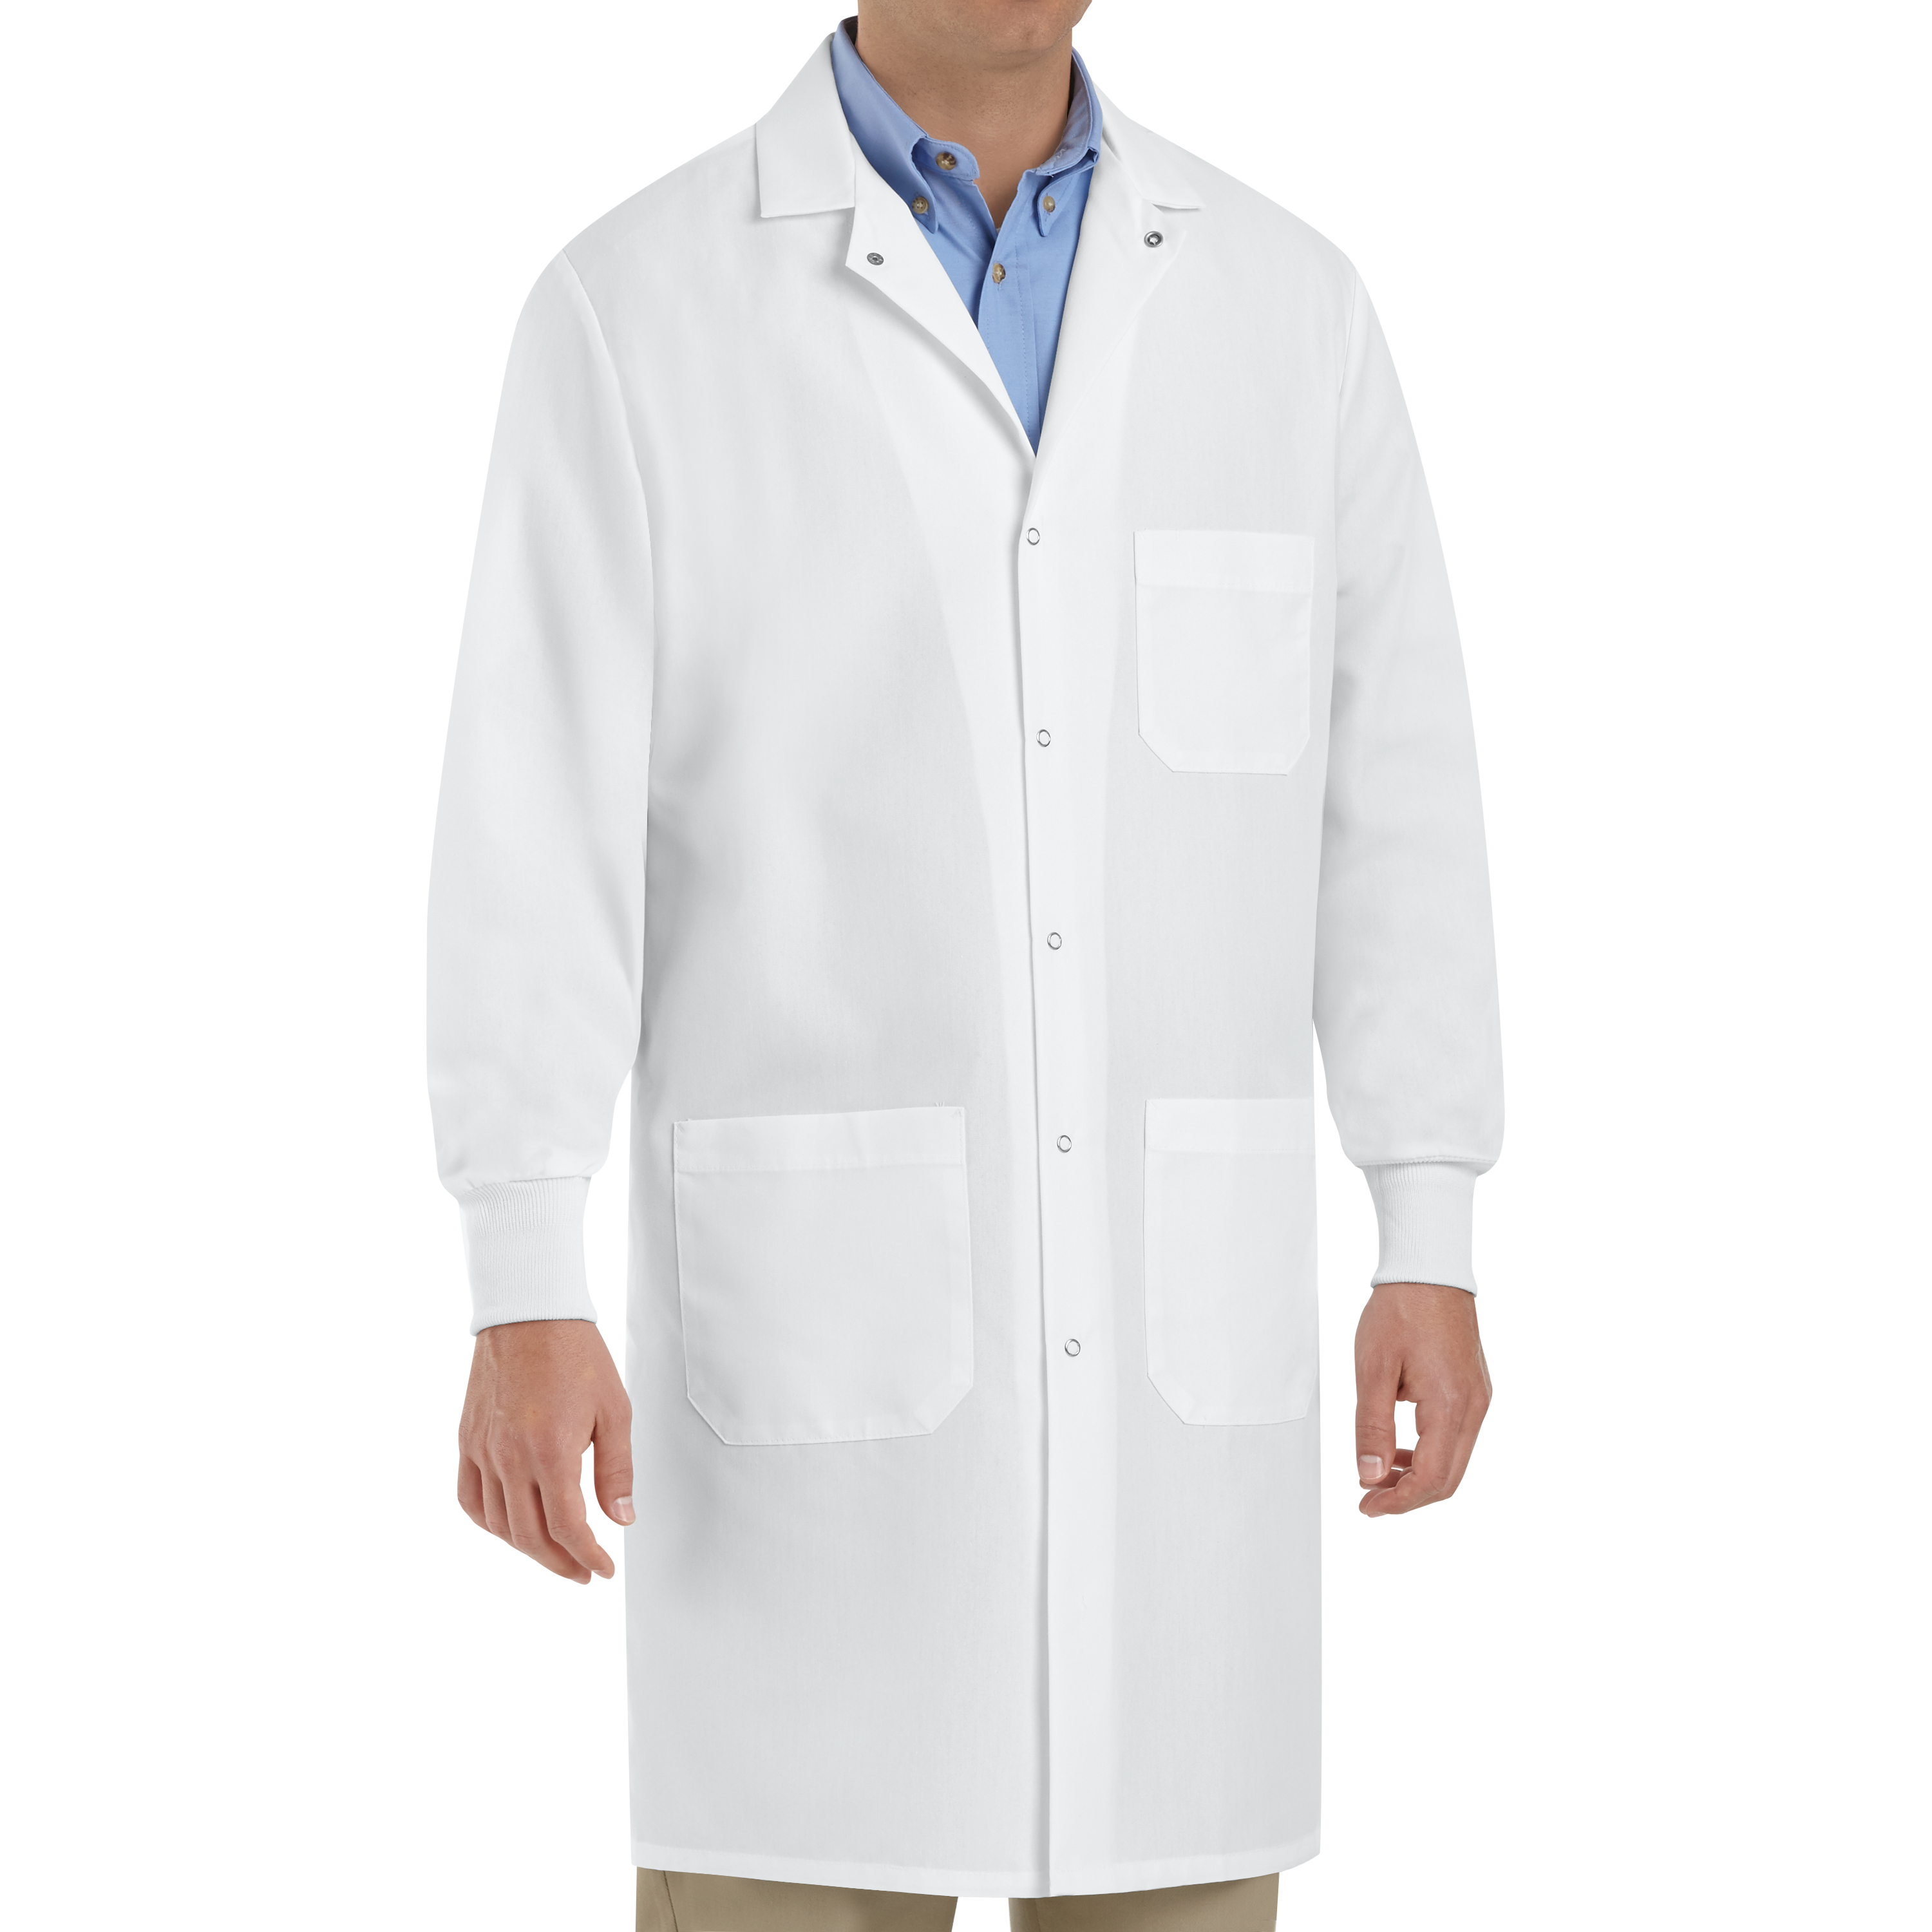 Белый халат медицинский мужской. Доктор в халате. Халат медицинский белый. Халат ученого. Лабораторный халат.